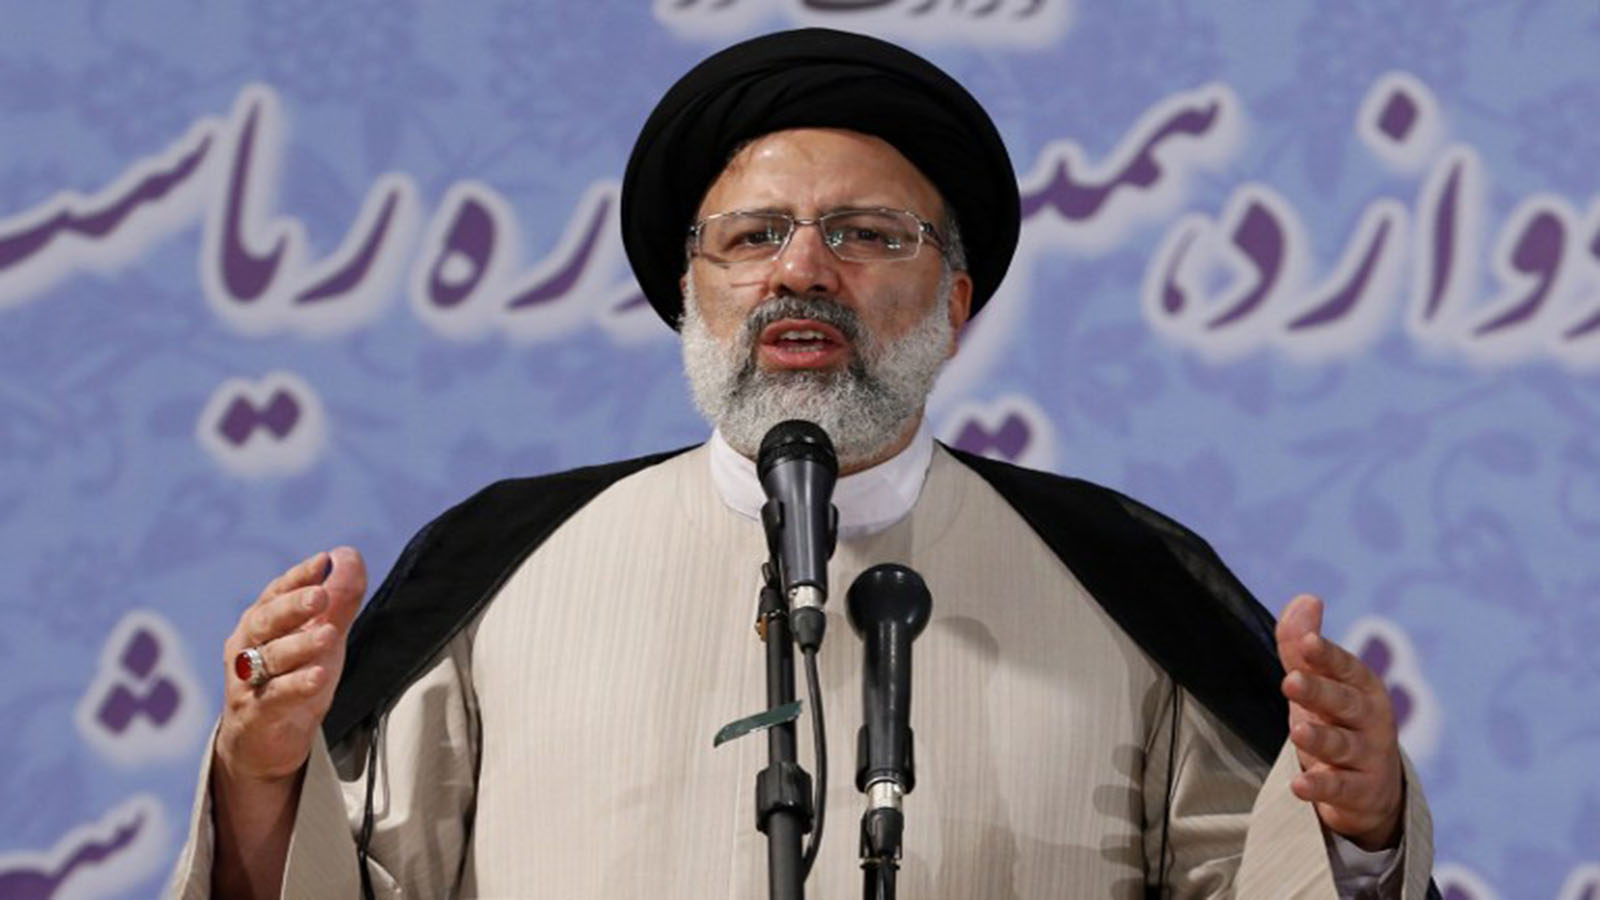 إيران: المرشح رئيسي على خطى خامنئي؟